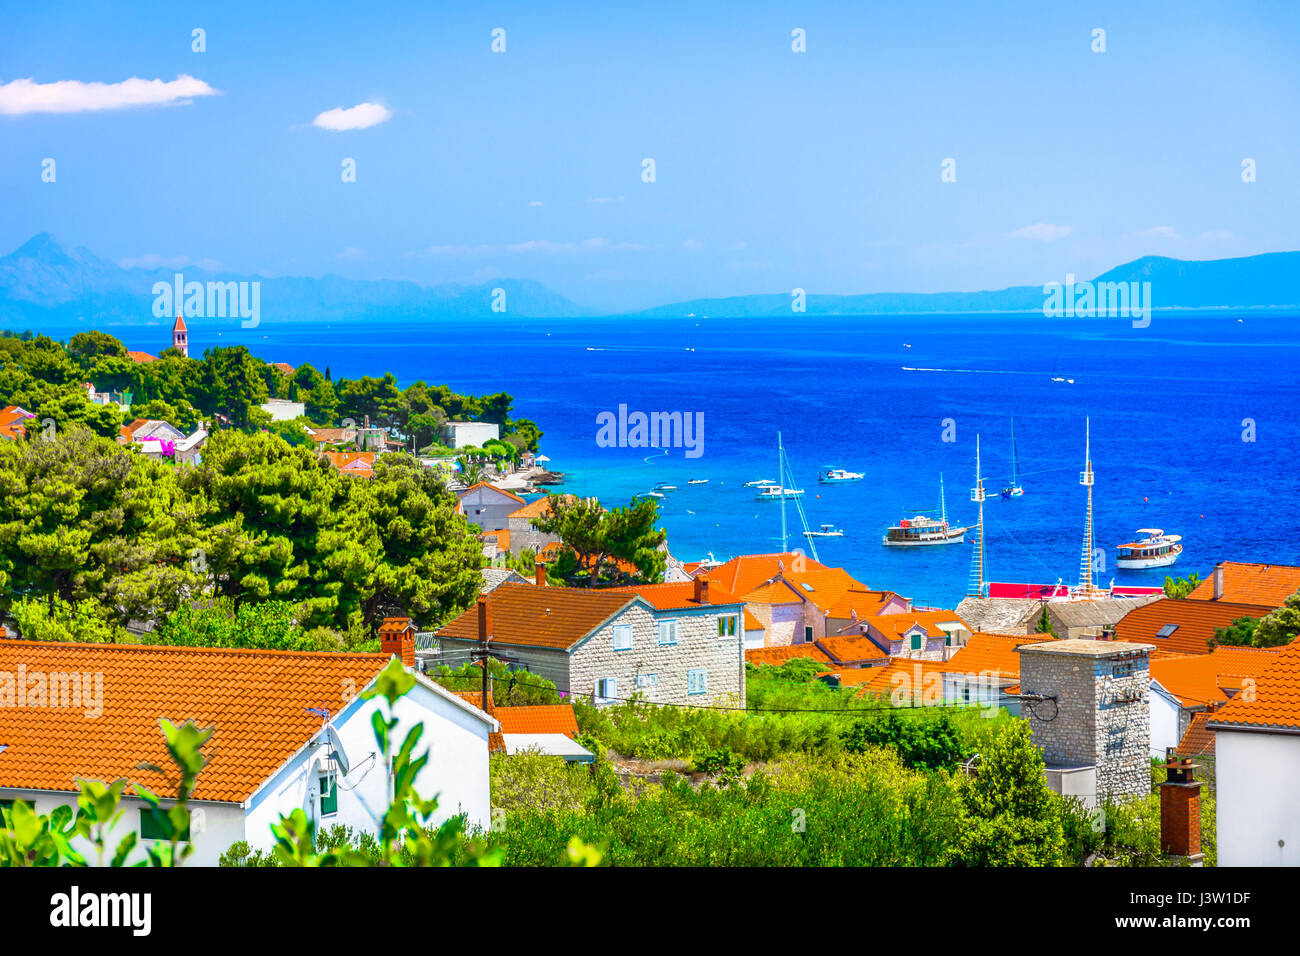 Vue aérienne de la ville de Bol, lieu touristique estivale populaire sur la côte Adriatique, Croatie. Banque D'Images